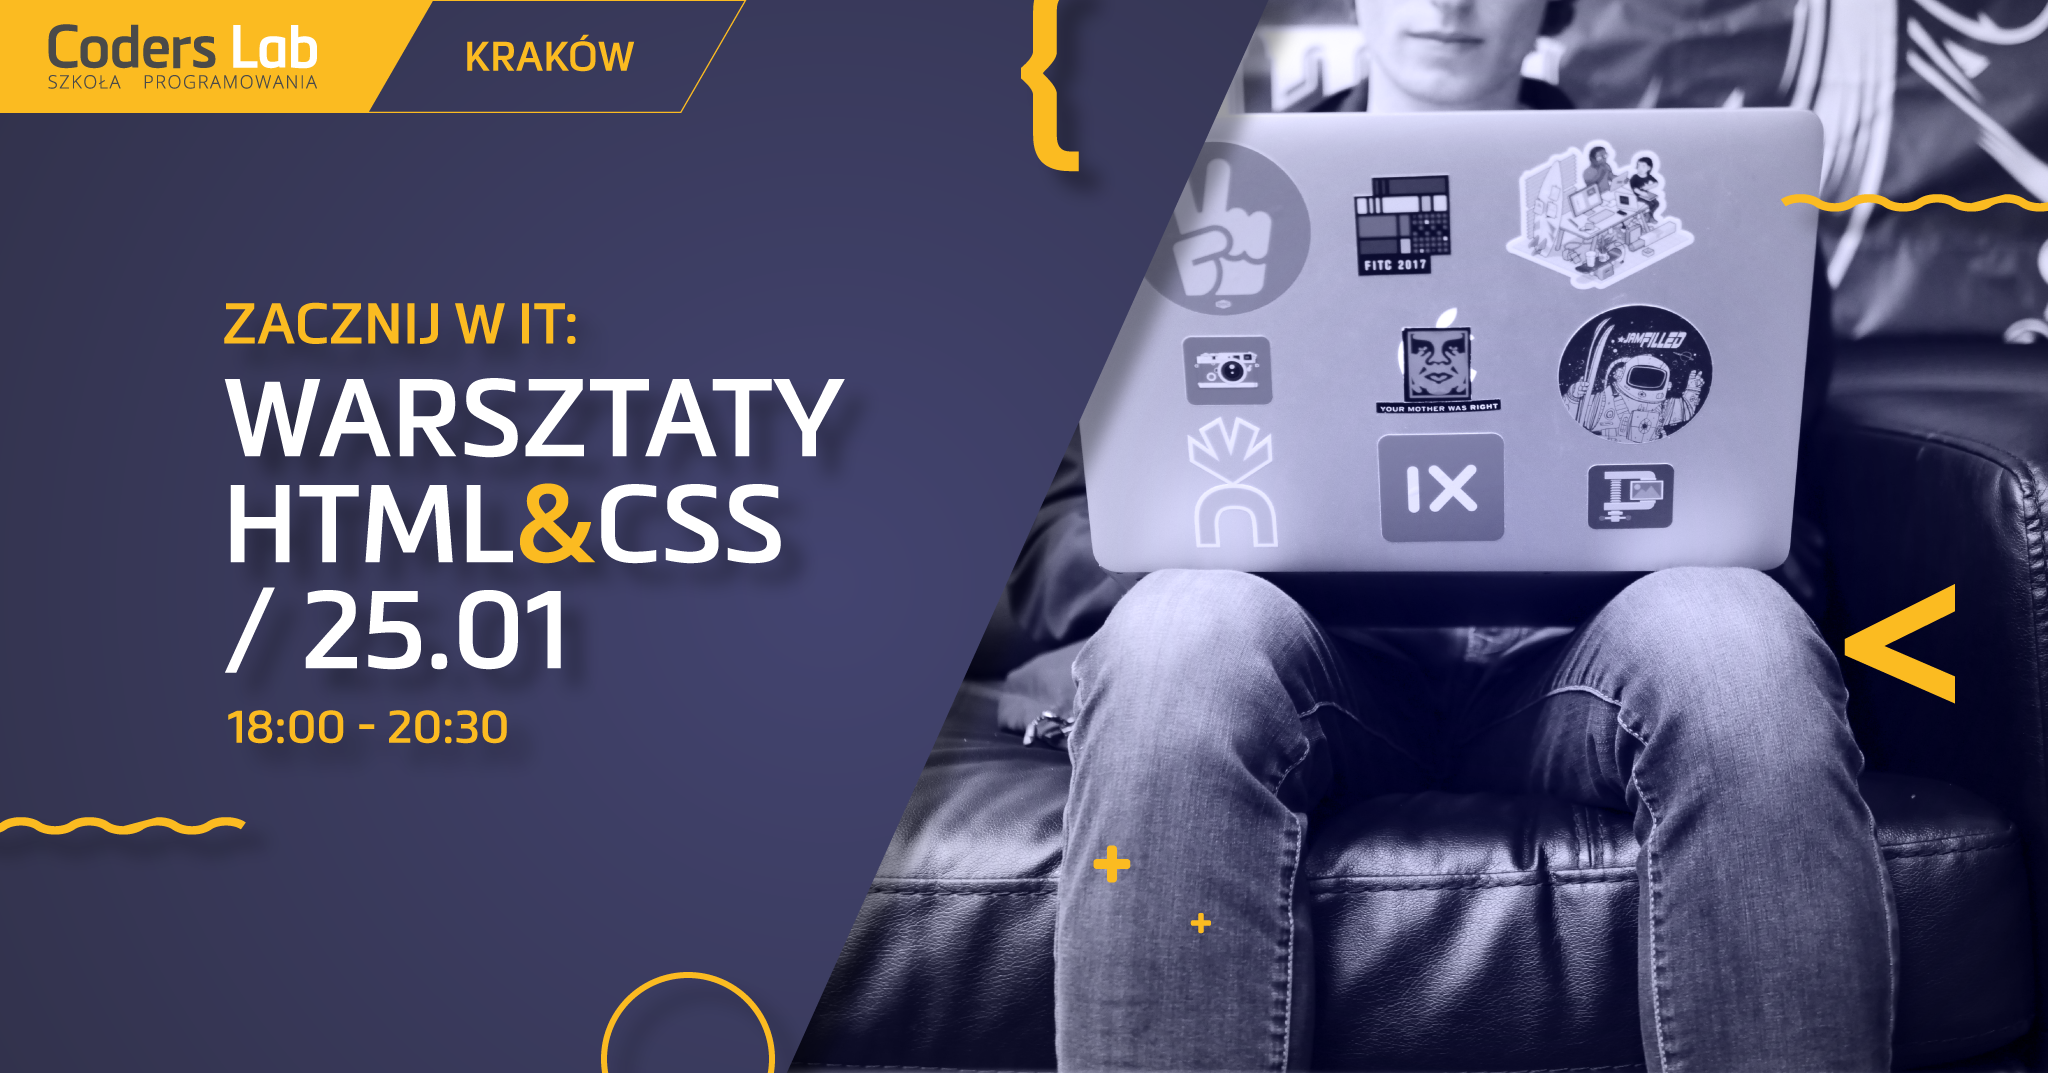 coders-lab-szkola-programowania-zacznij-w-it-warsztaty-html-i-css-w-krakowie-styczen-2018